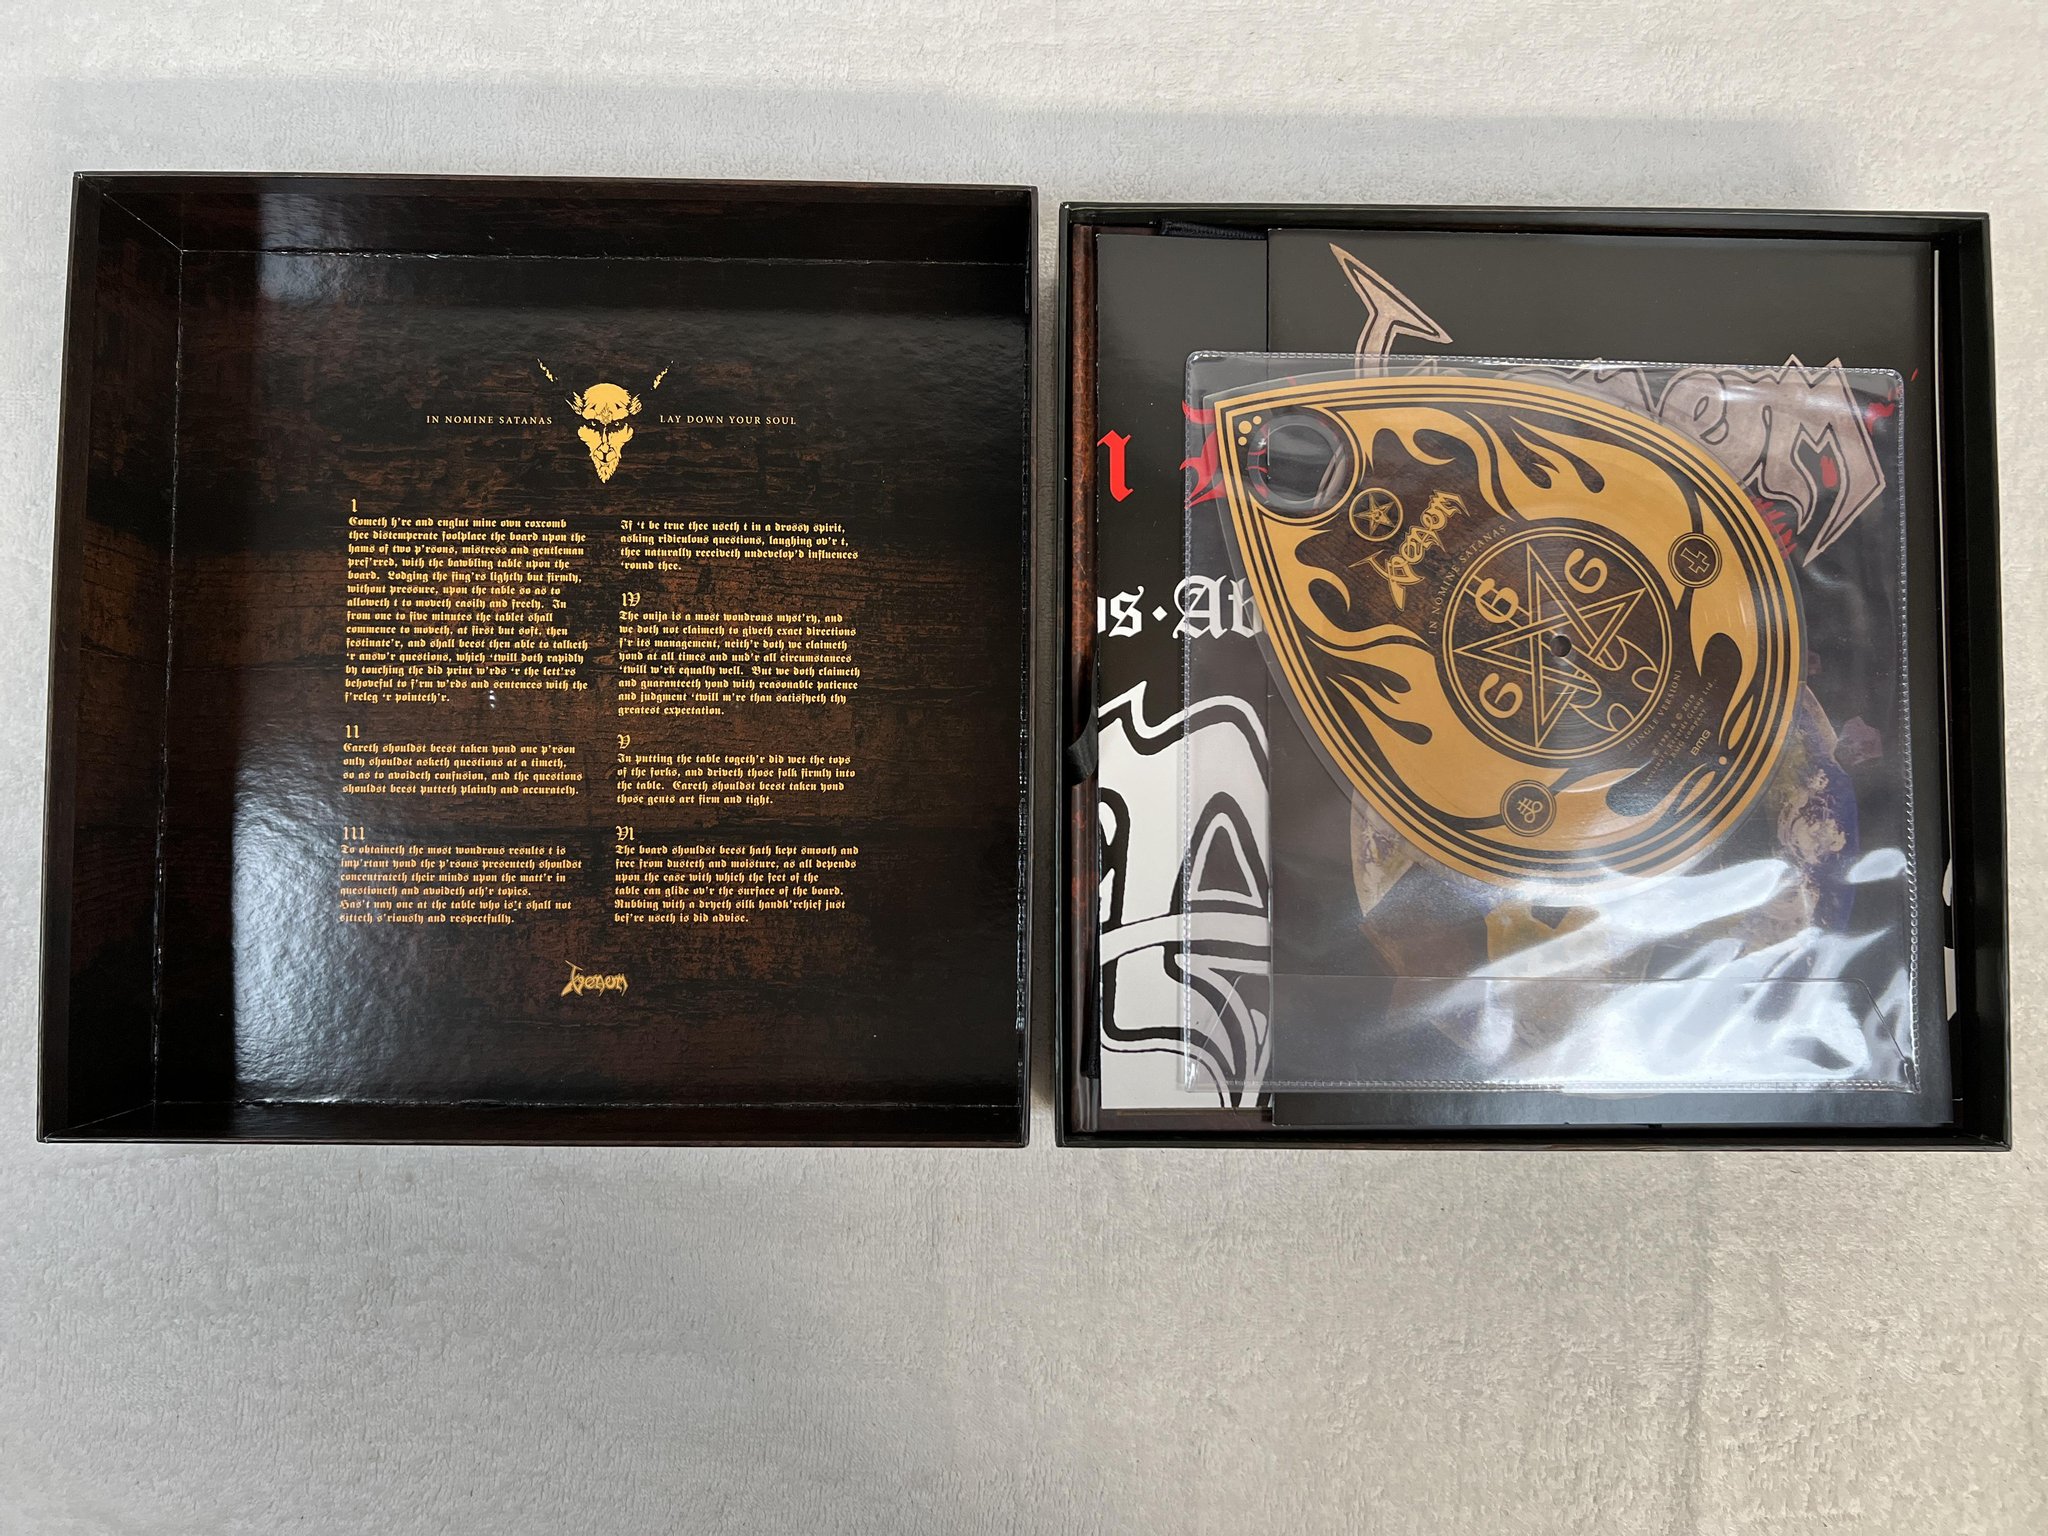 Omslagsbild för skivan VENOM In Nomine Satanas BOX SET deluxe ed 2019 BMGCAT666BOX *** BLACK METAL ***